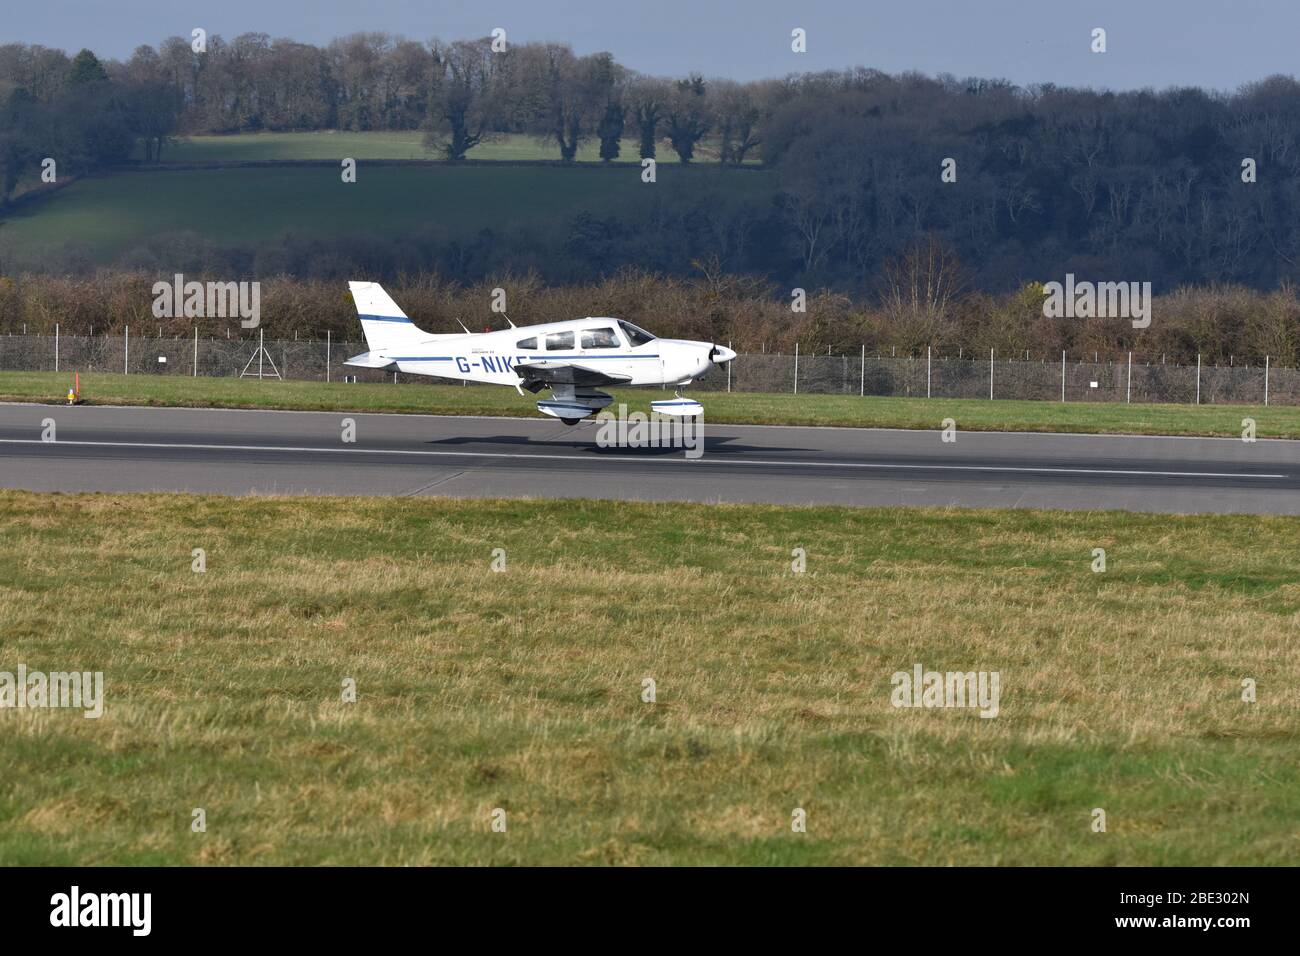 Ein leichtes Piper PA-28-181 (G-NIKE) Flugzeug am Flughafen Bristol am 6. Februar 2019. ERWEITERTE FLUGSCHULUNG DER FLUGGESELLSCHAFT Stockfoto